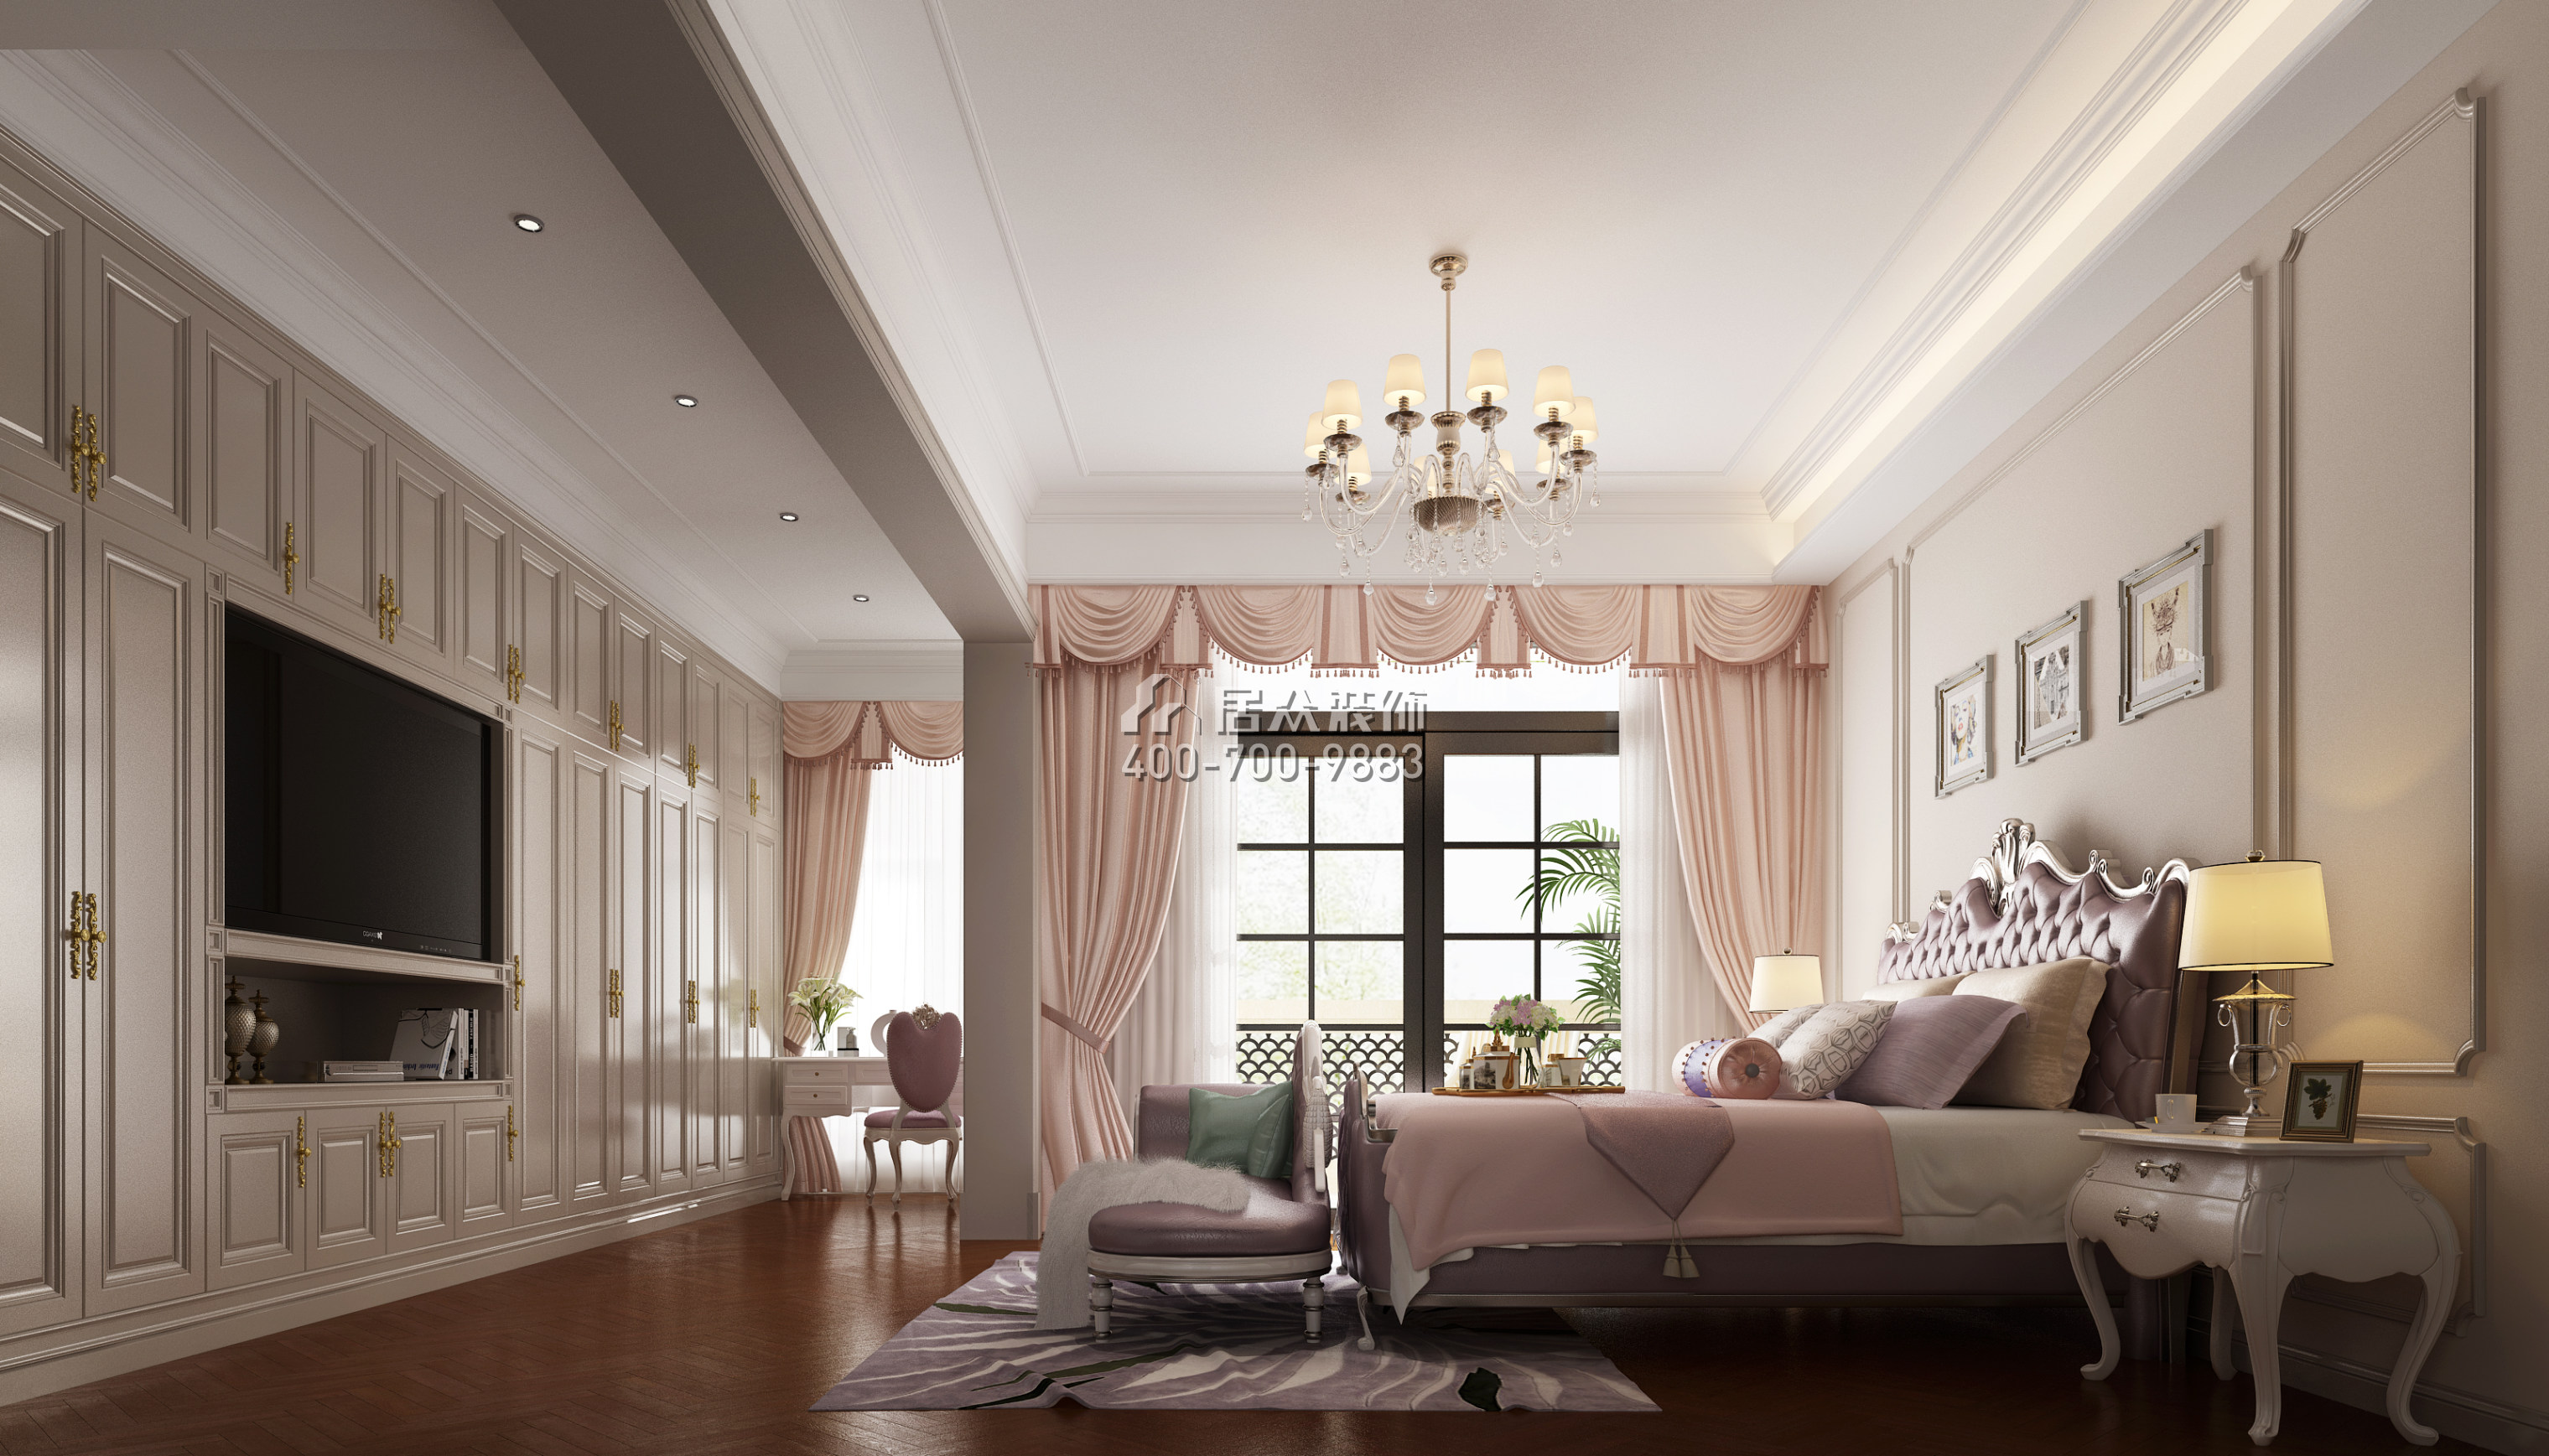 水映加州680平方米美式风格别墅户型卧室装修效果图